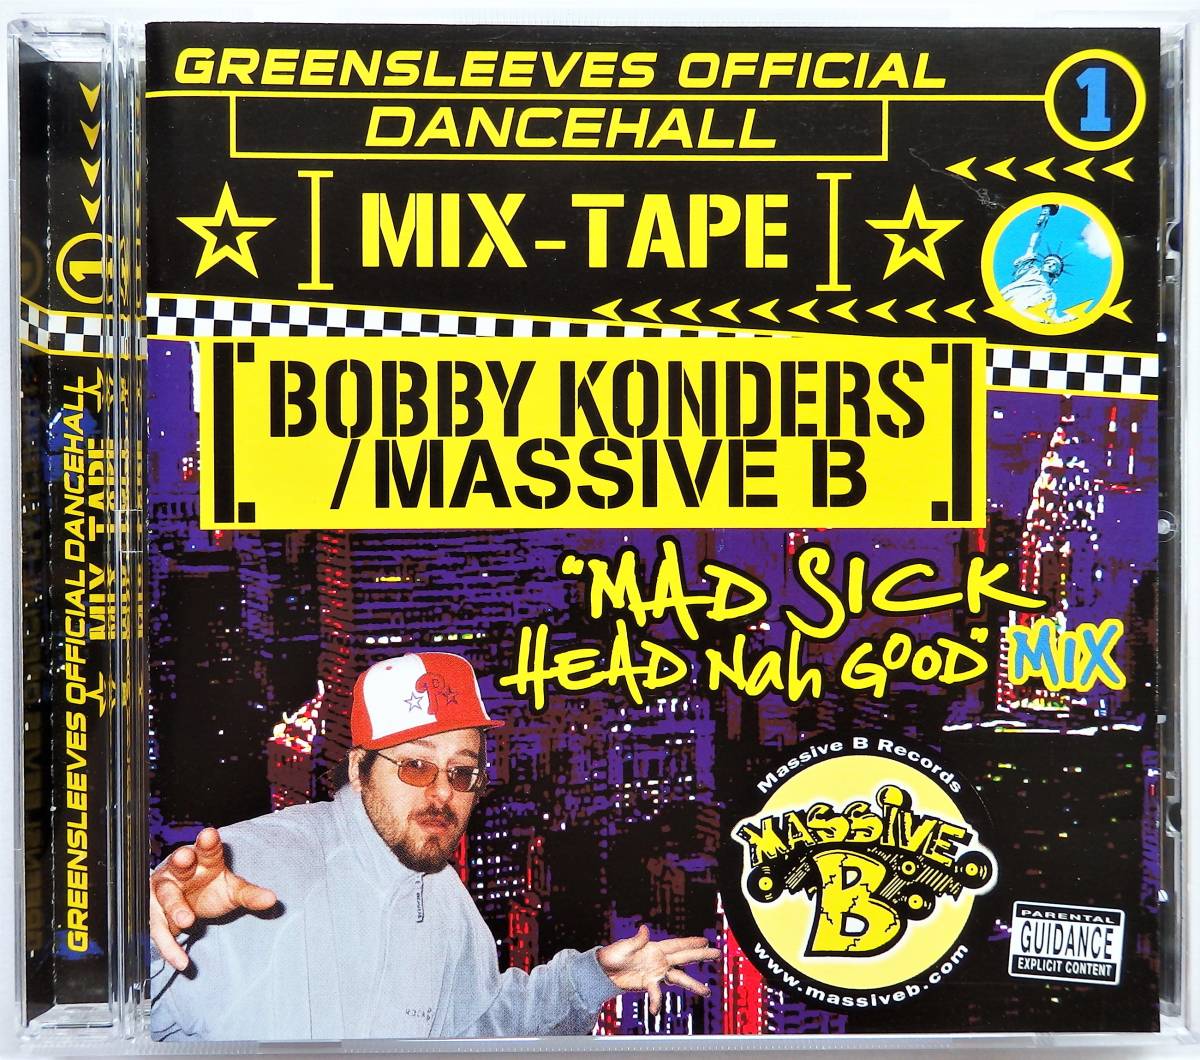 【2003年ダンスホールレゲエMix CD】BOBBY KONDERS / Greensleeves Official Dancehall Mix-Tape 1"Mad Sick Head Nah Giid" Mixの画像1